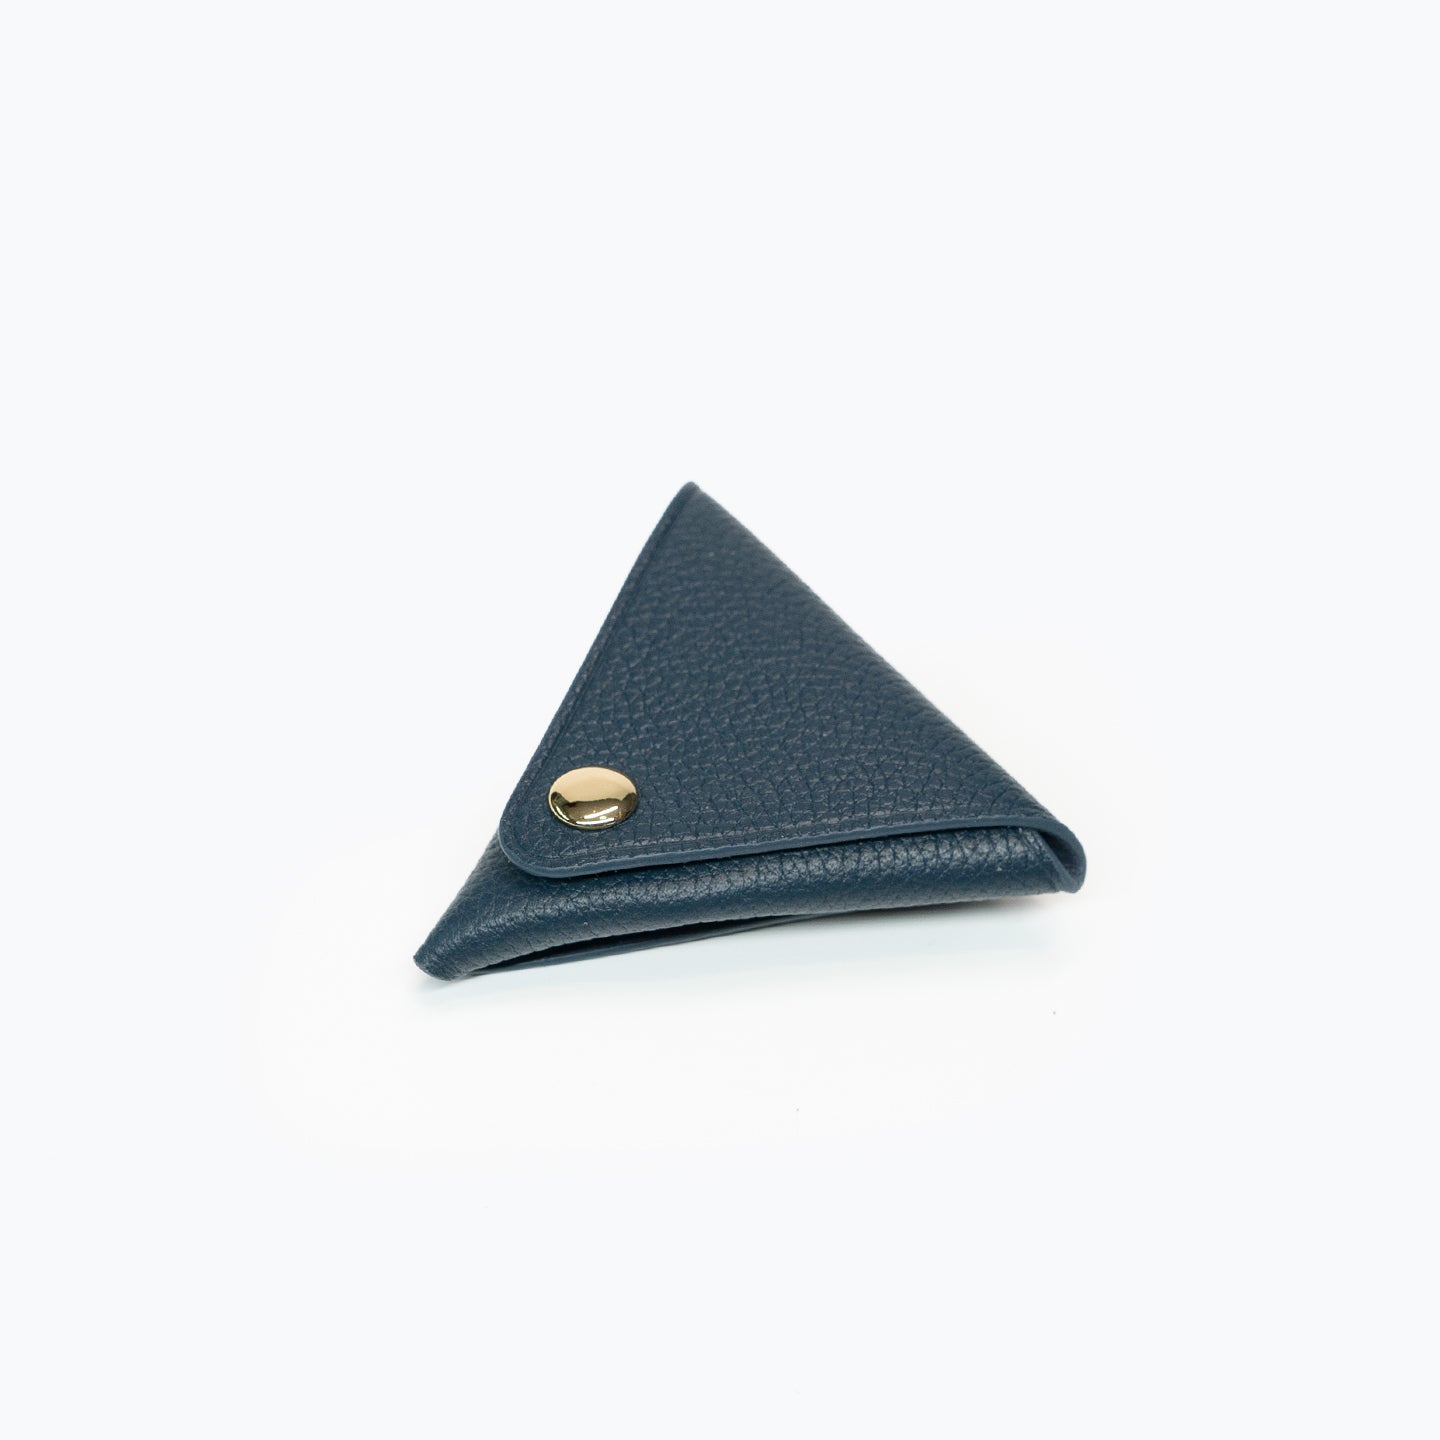 三角形零钱包-普鲁士蓝